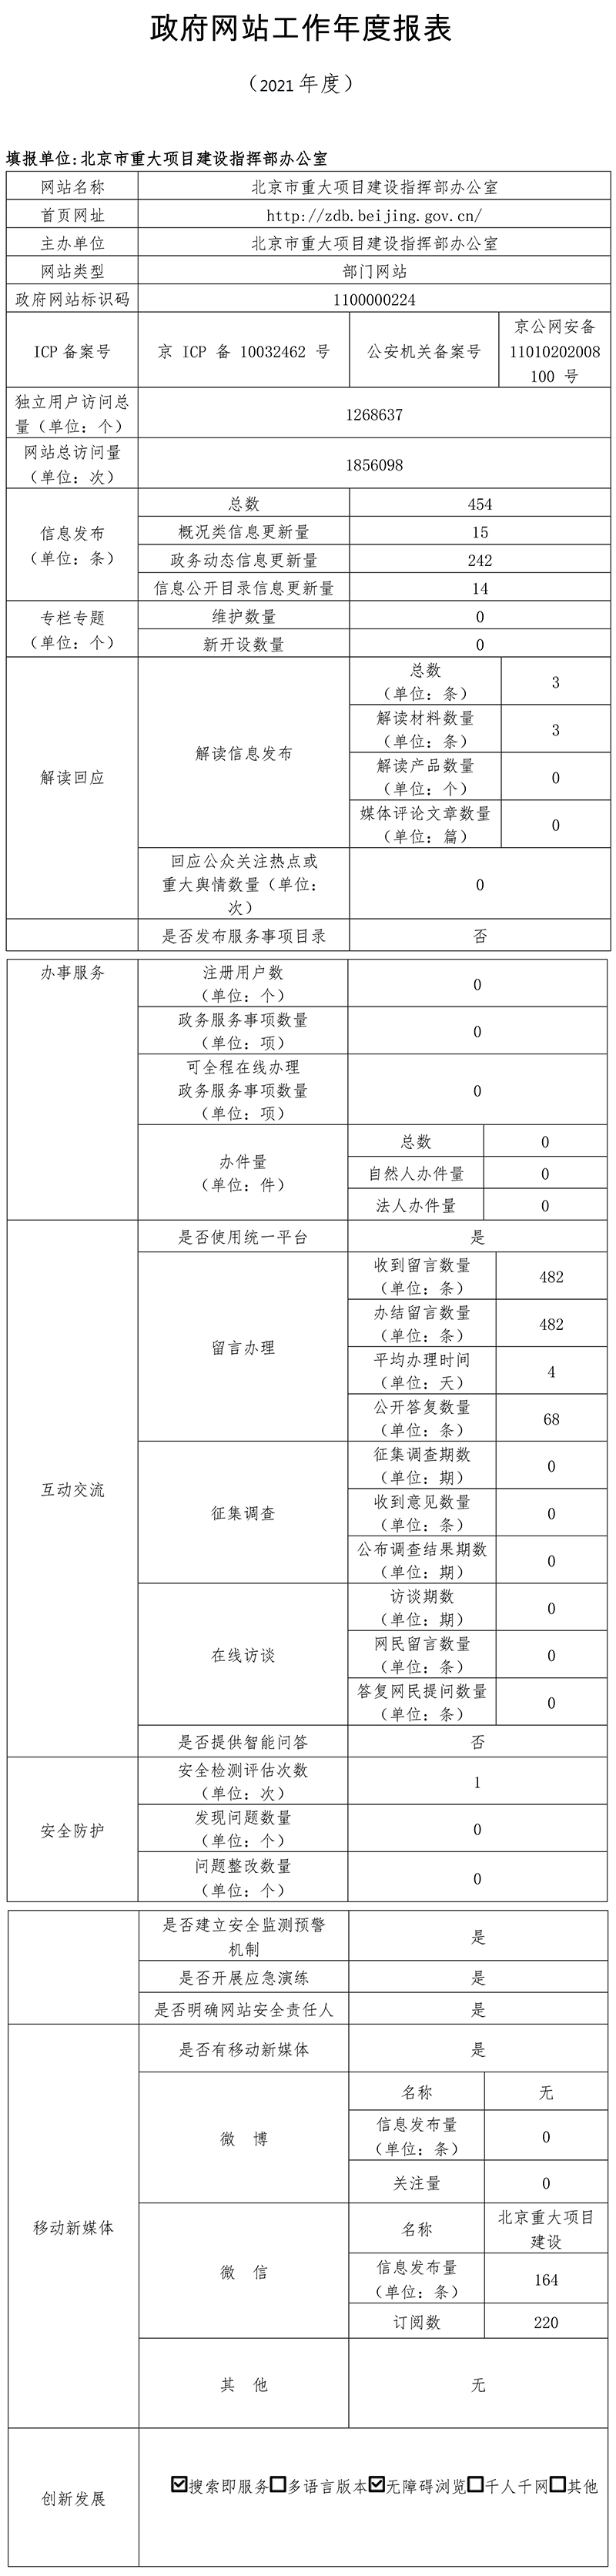 北京市重大项目建设指挥部办公室2021年政府网站年度工作报表